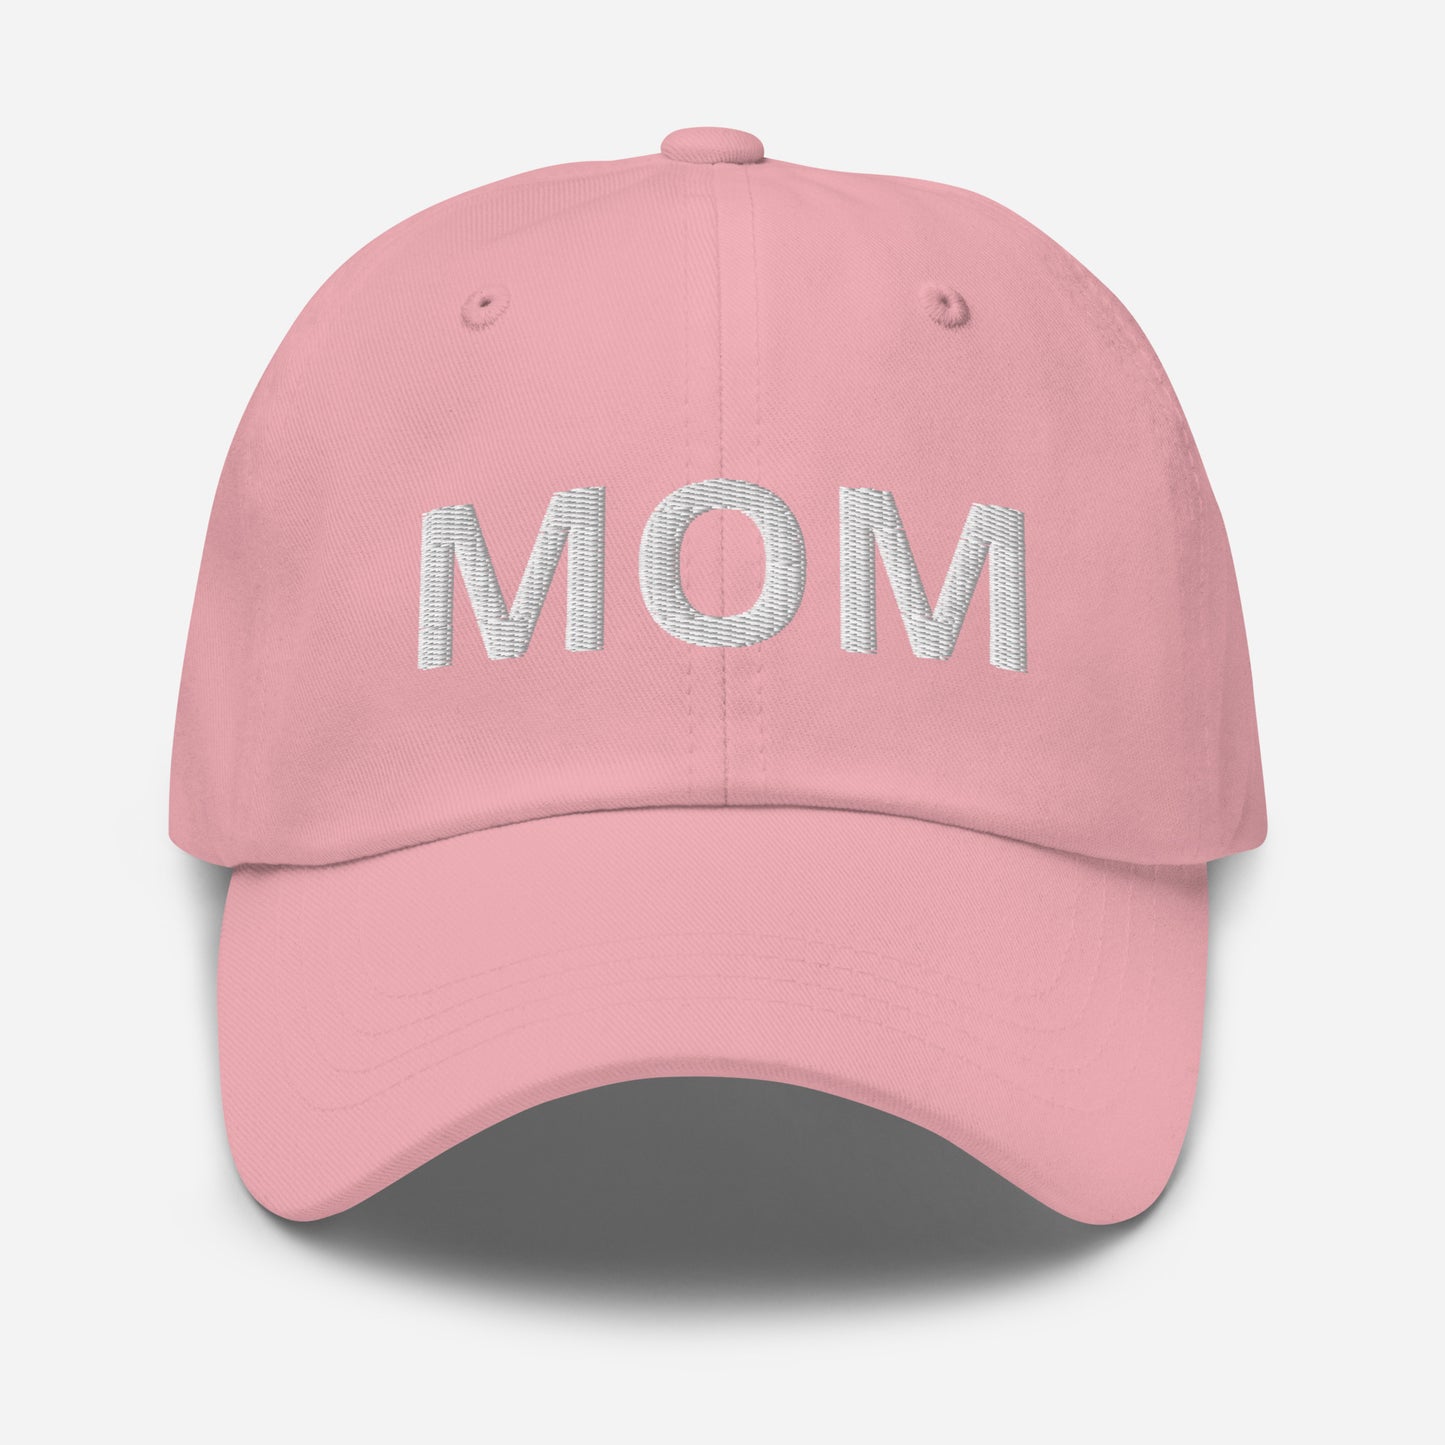 MOM - Dad hat